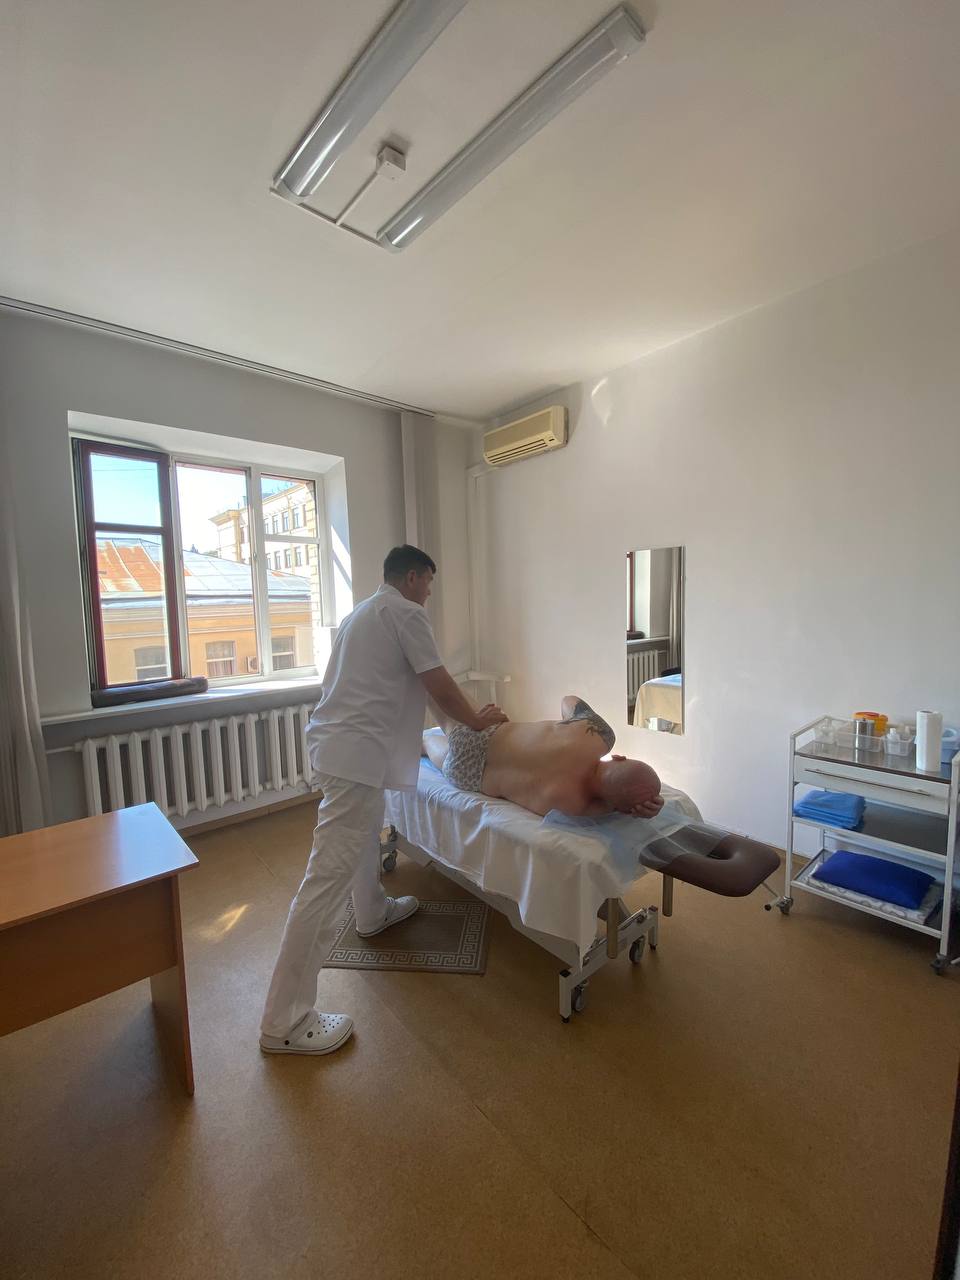 Мануальная терапия при фибромиалгии: терапевт делает массаж на спине пациента